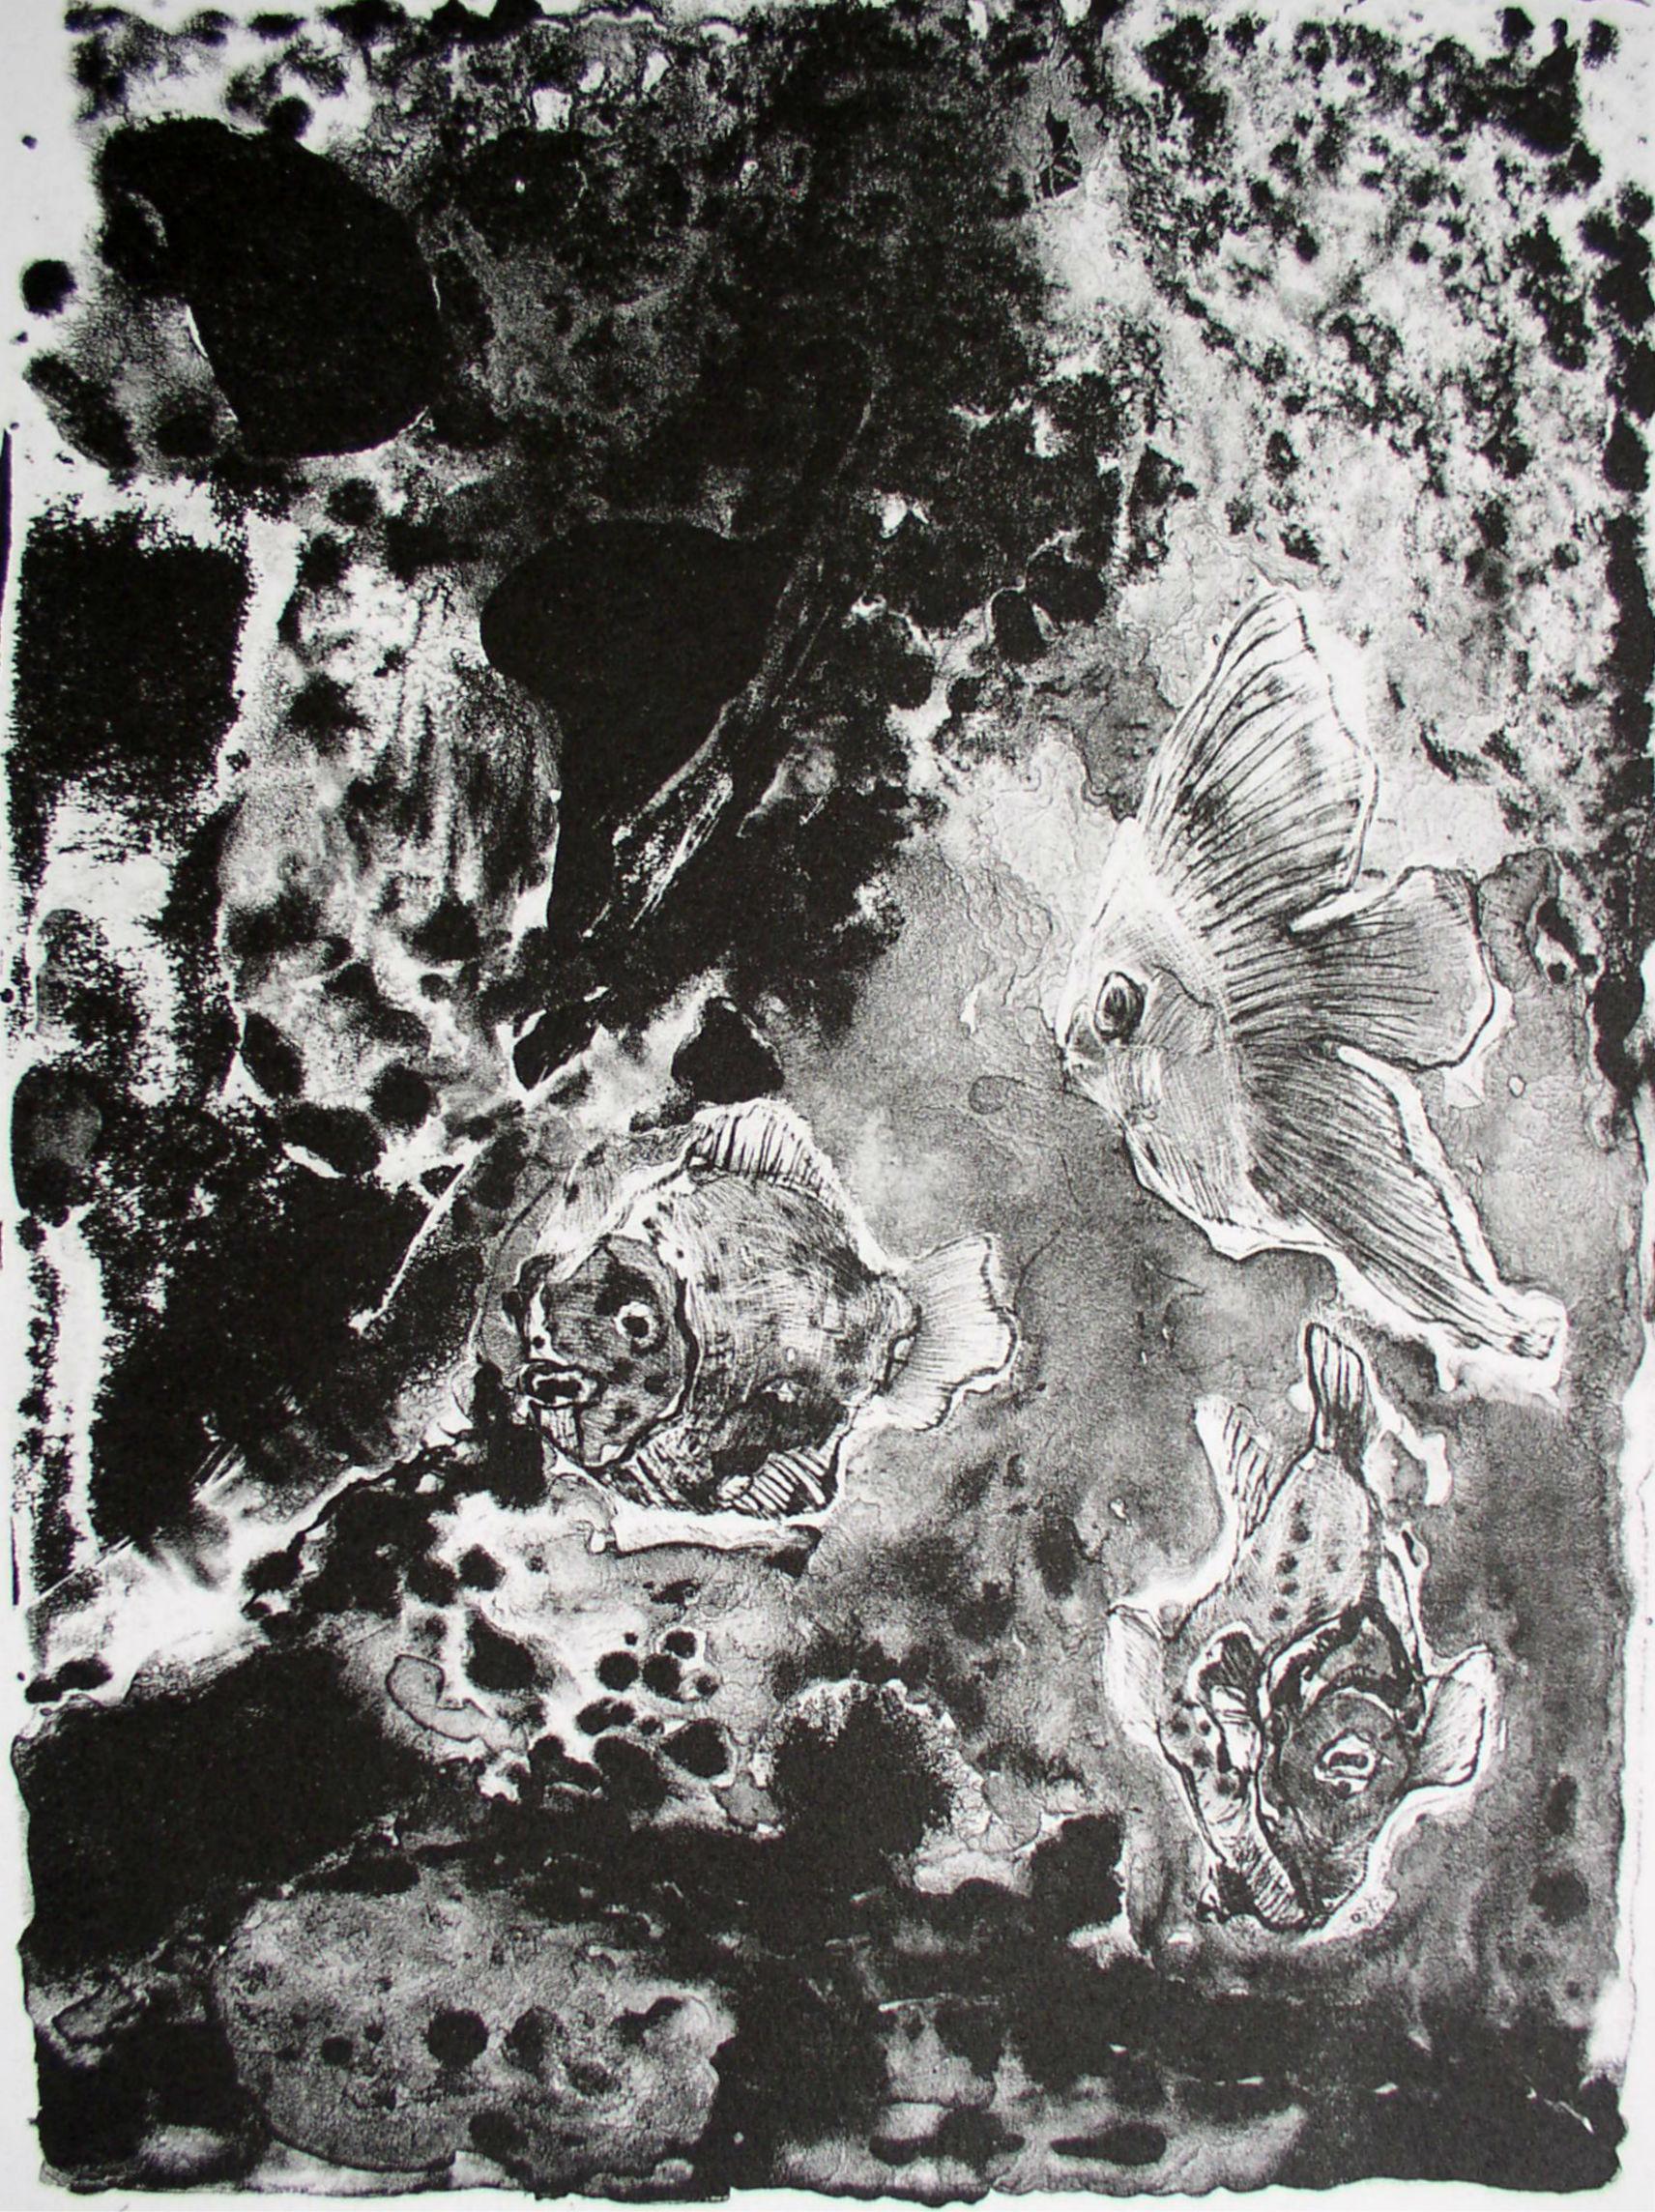 Fish - XXIe siècle, lithographie en noir et blanc, abstraction, animaux